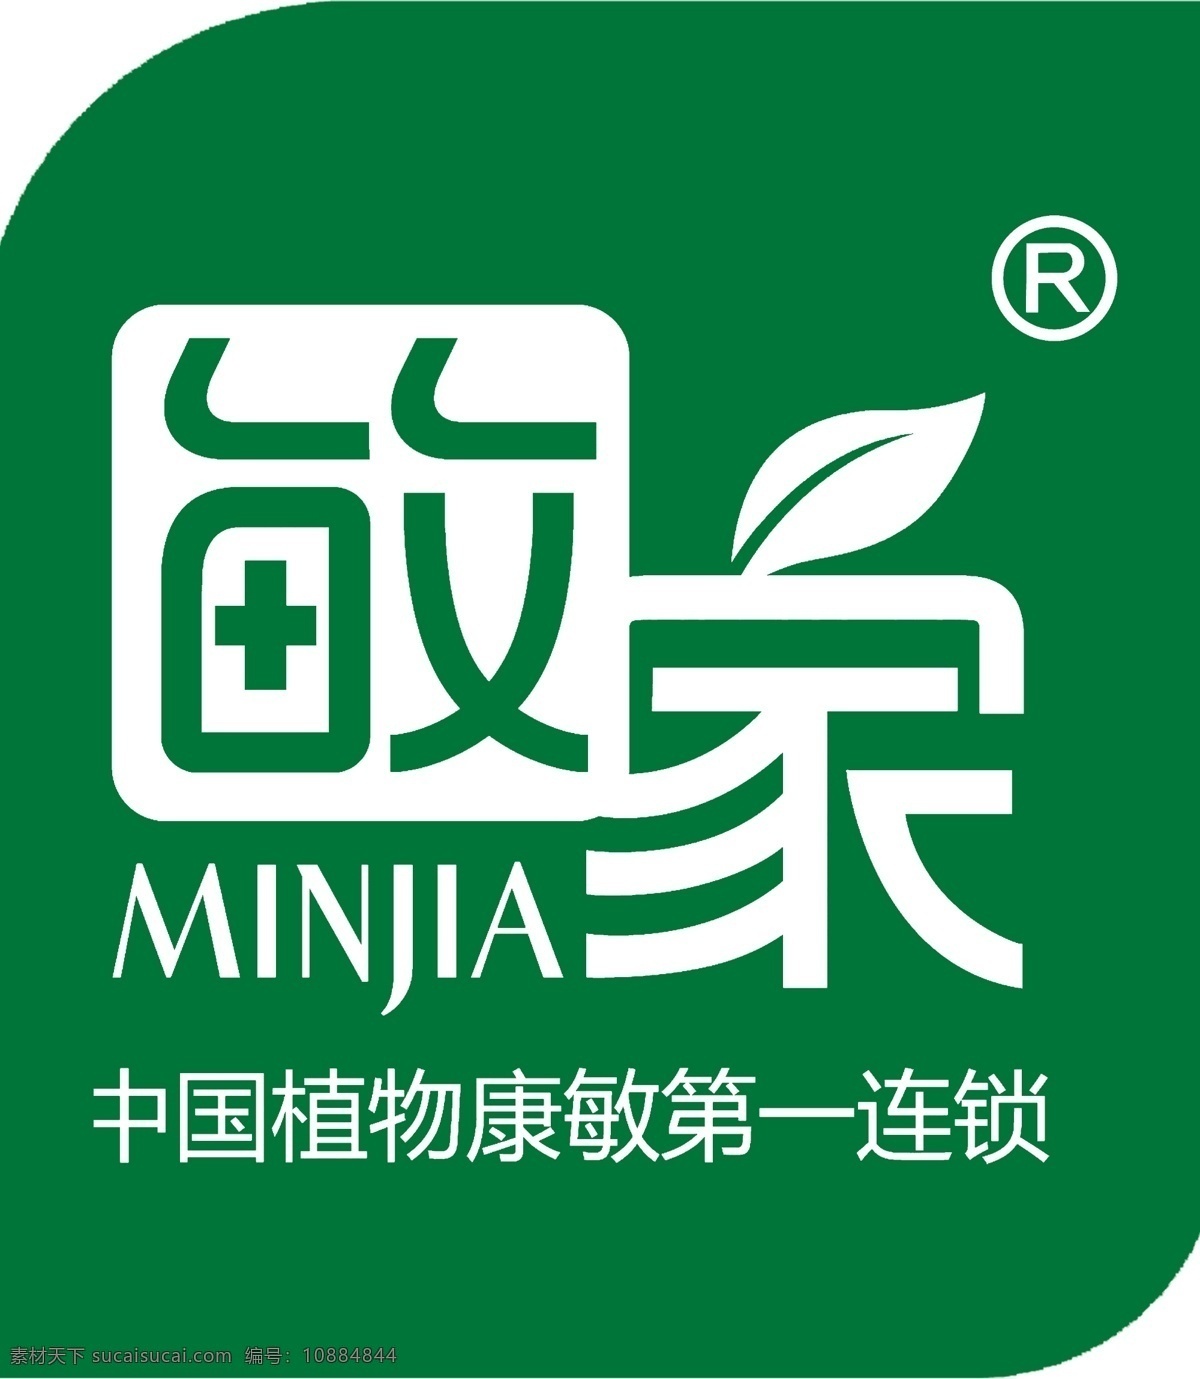 敏家祛痘 敏家 祛痘品牌 敏家标志 中国植物 抗敏品牌 logo设计